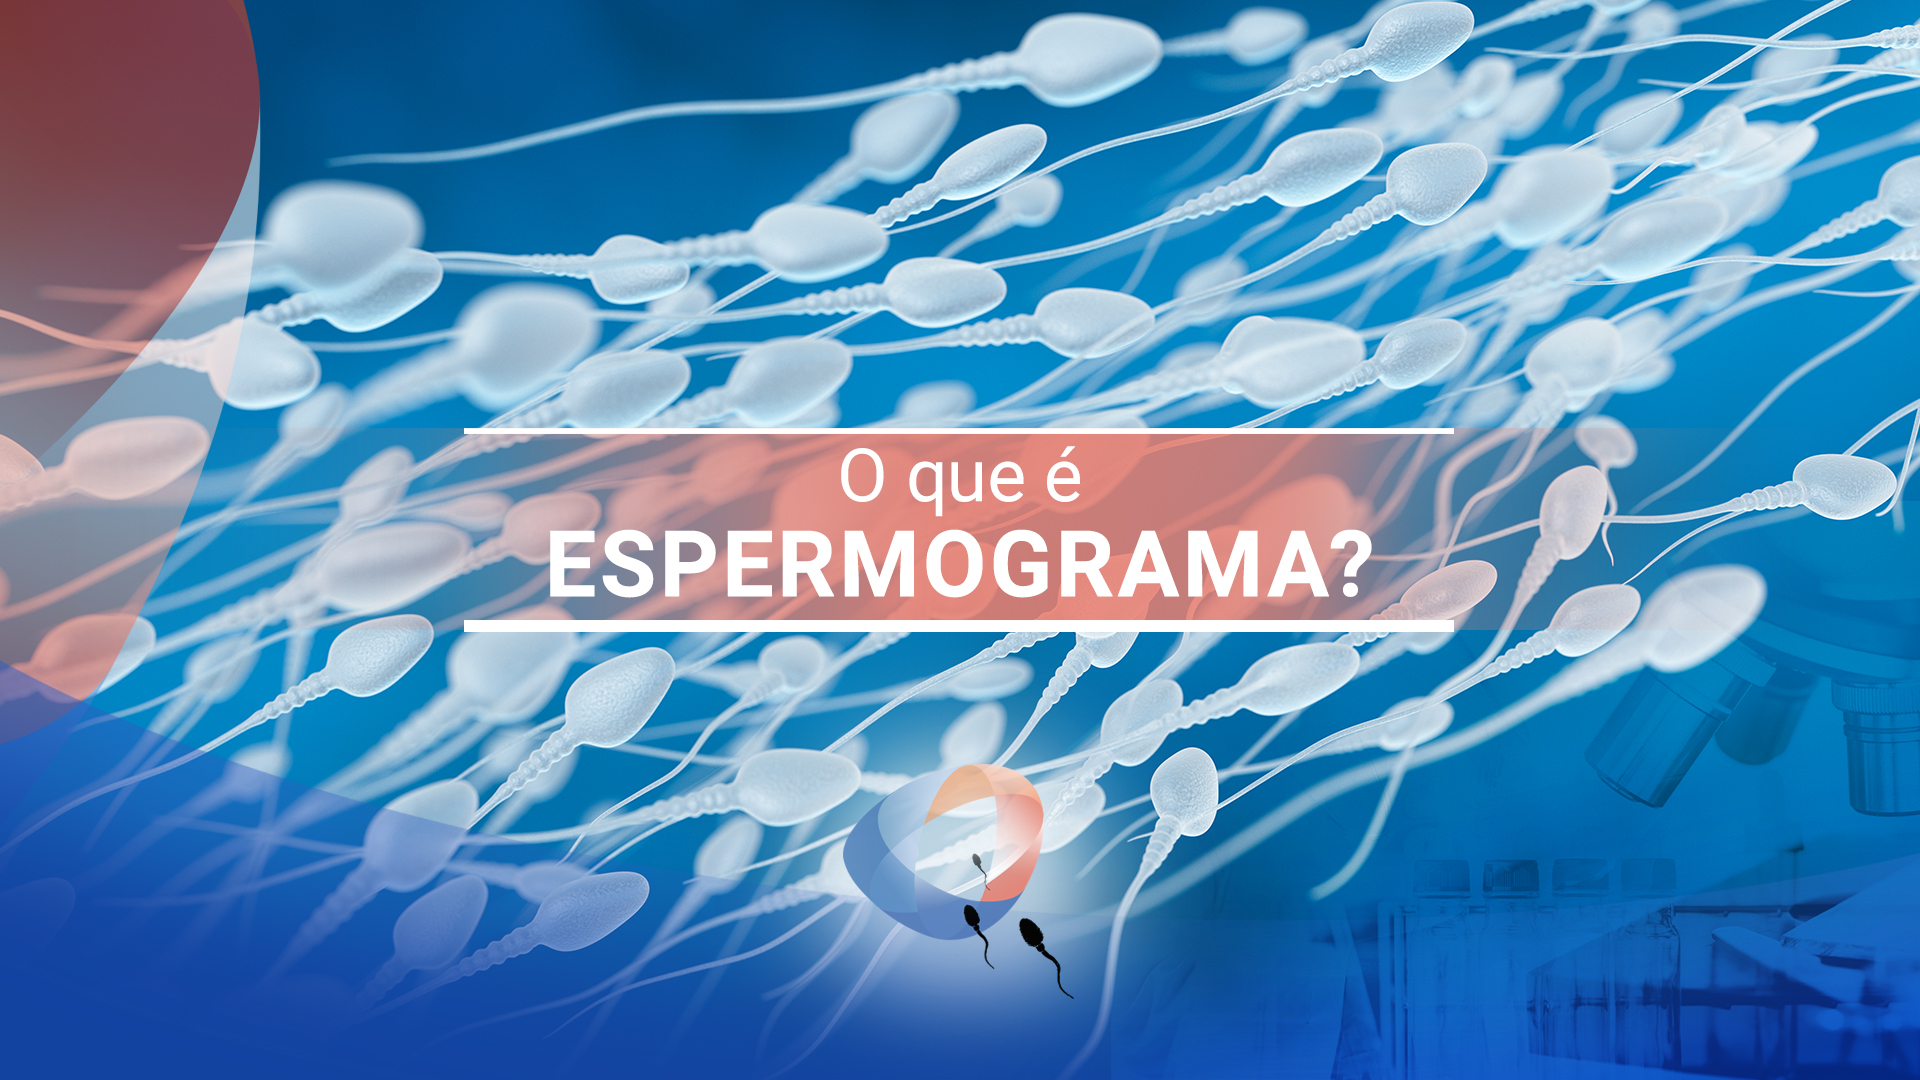 O que é espermograma?